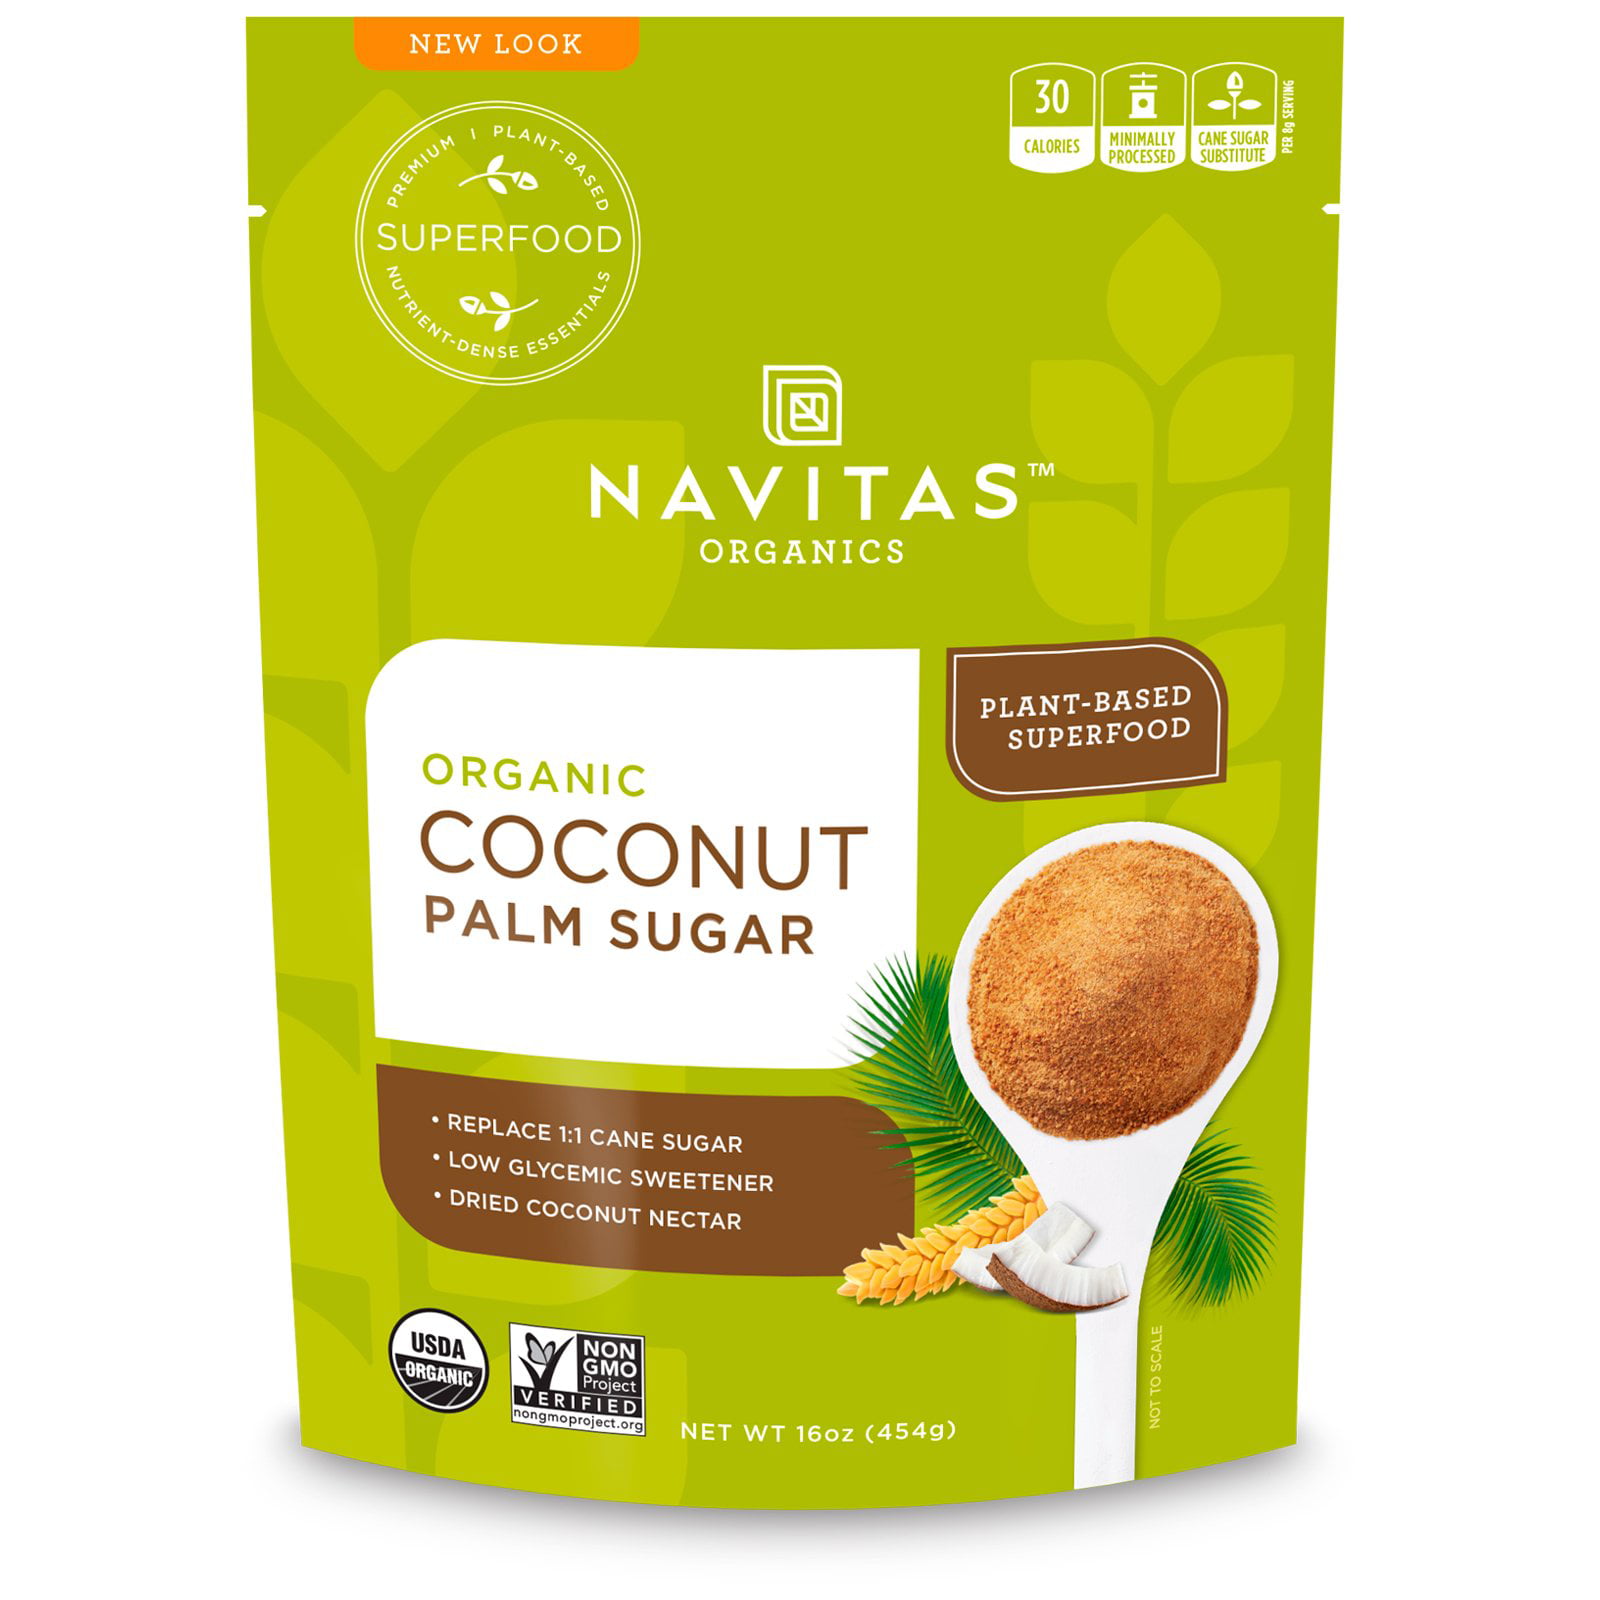 Navitas Organics Organic Coconut Palm Sugar 16 oz 454 g - Walmart.com